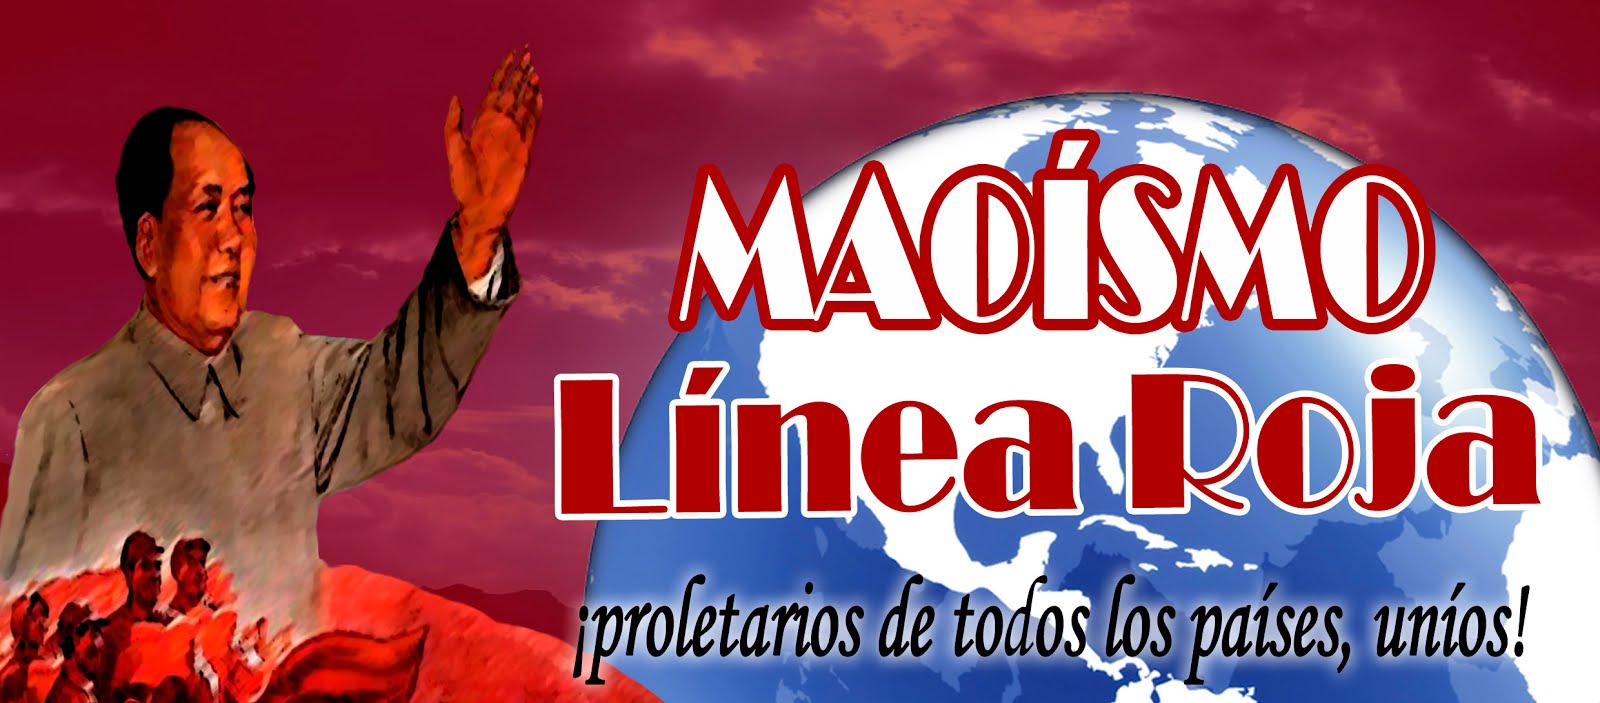 Maoísmo Línea Roja